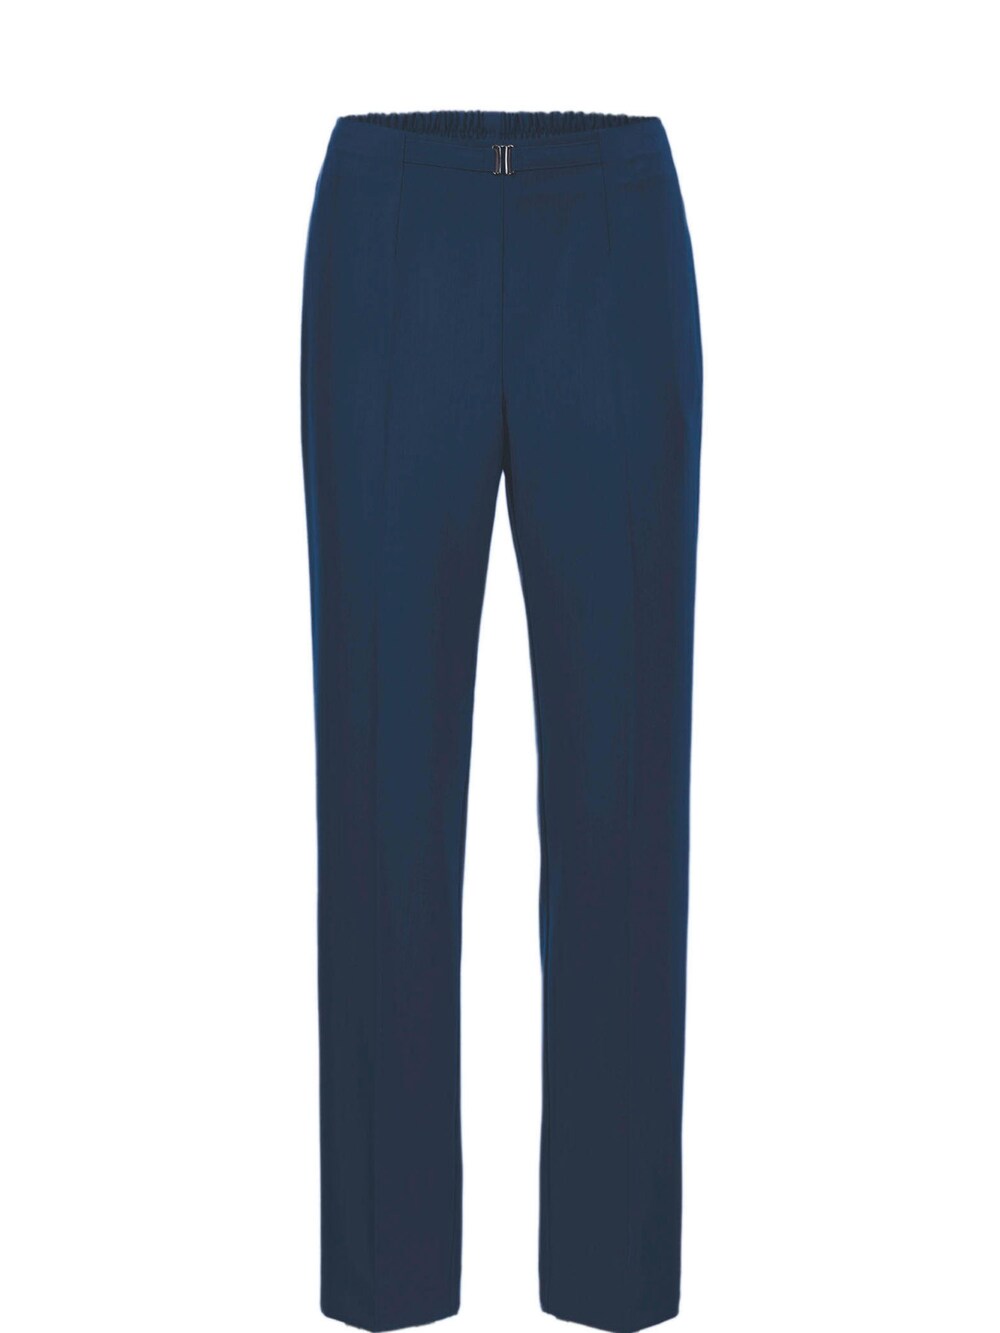 Обычные плиссированные брюки Goldner Martha, морской синий обычные брюки goldner морской синий